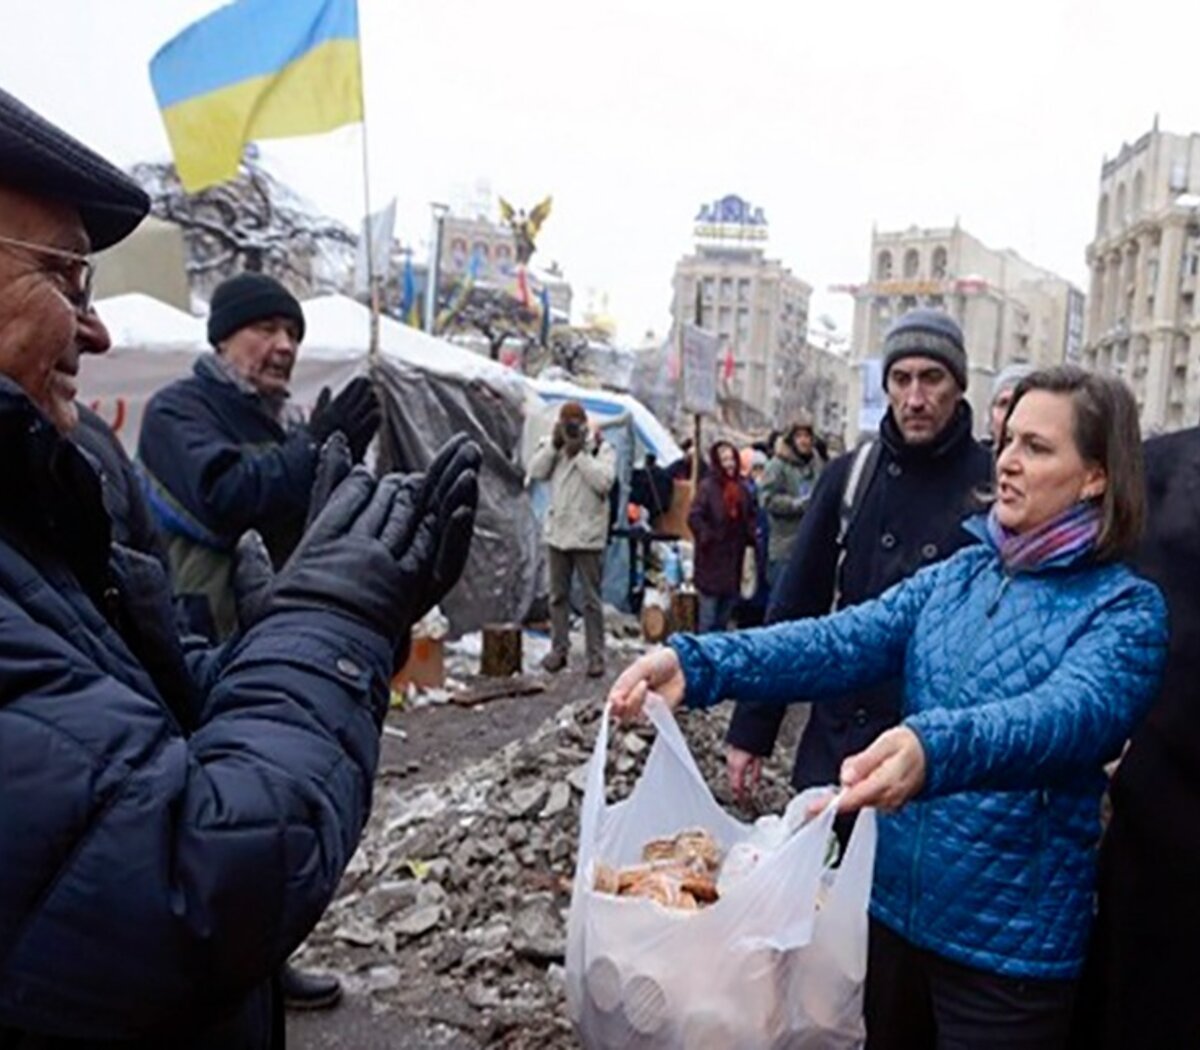 Victoria Nuland, un personaje sombrío en la crisis de Ucrania | Opinión | Página|12